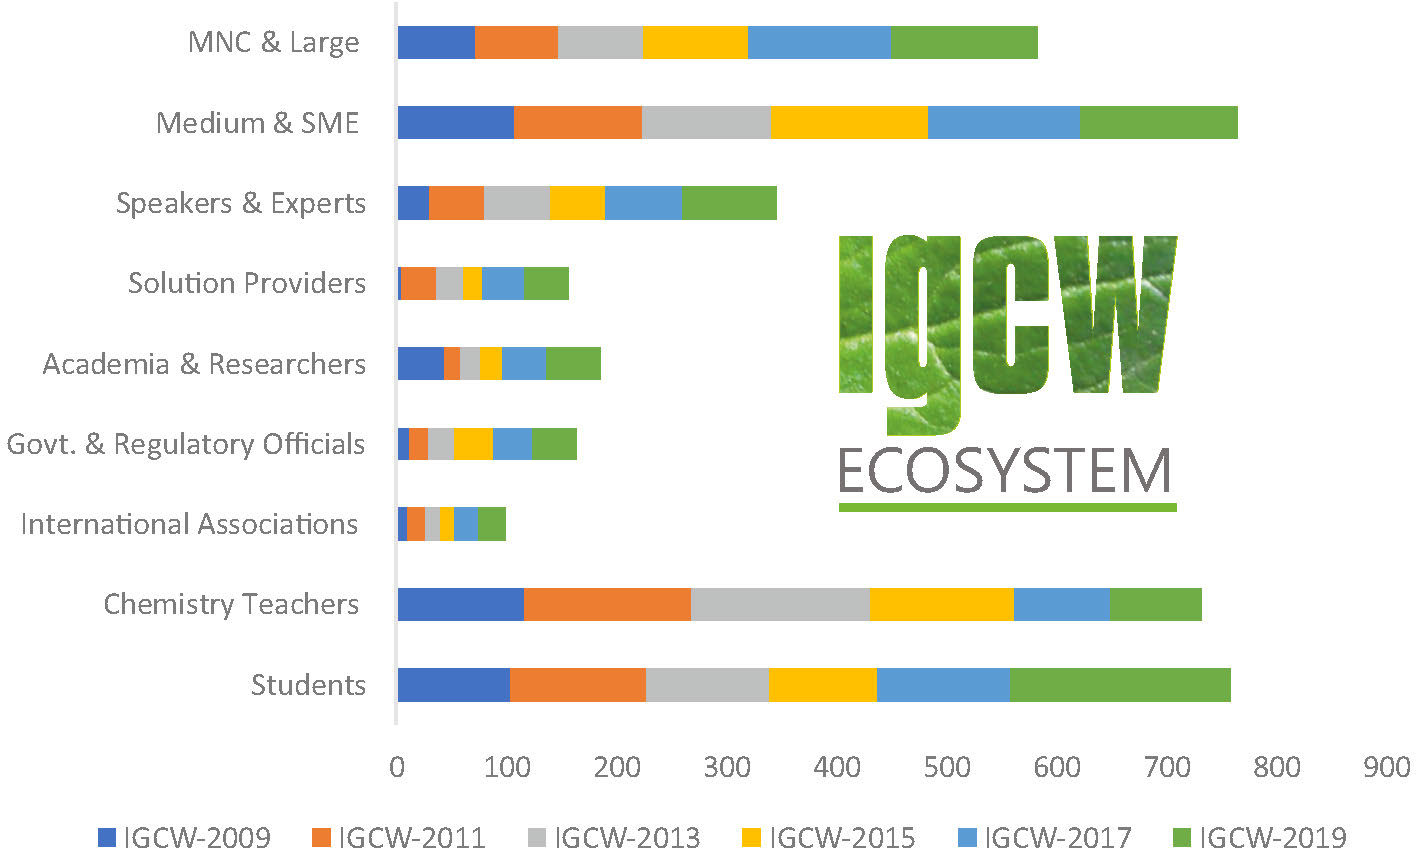 IGCW Ecosystem